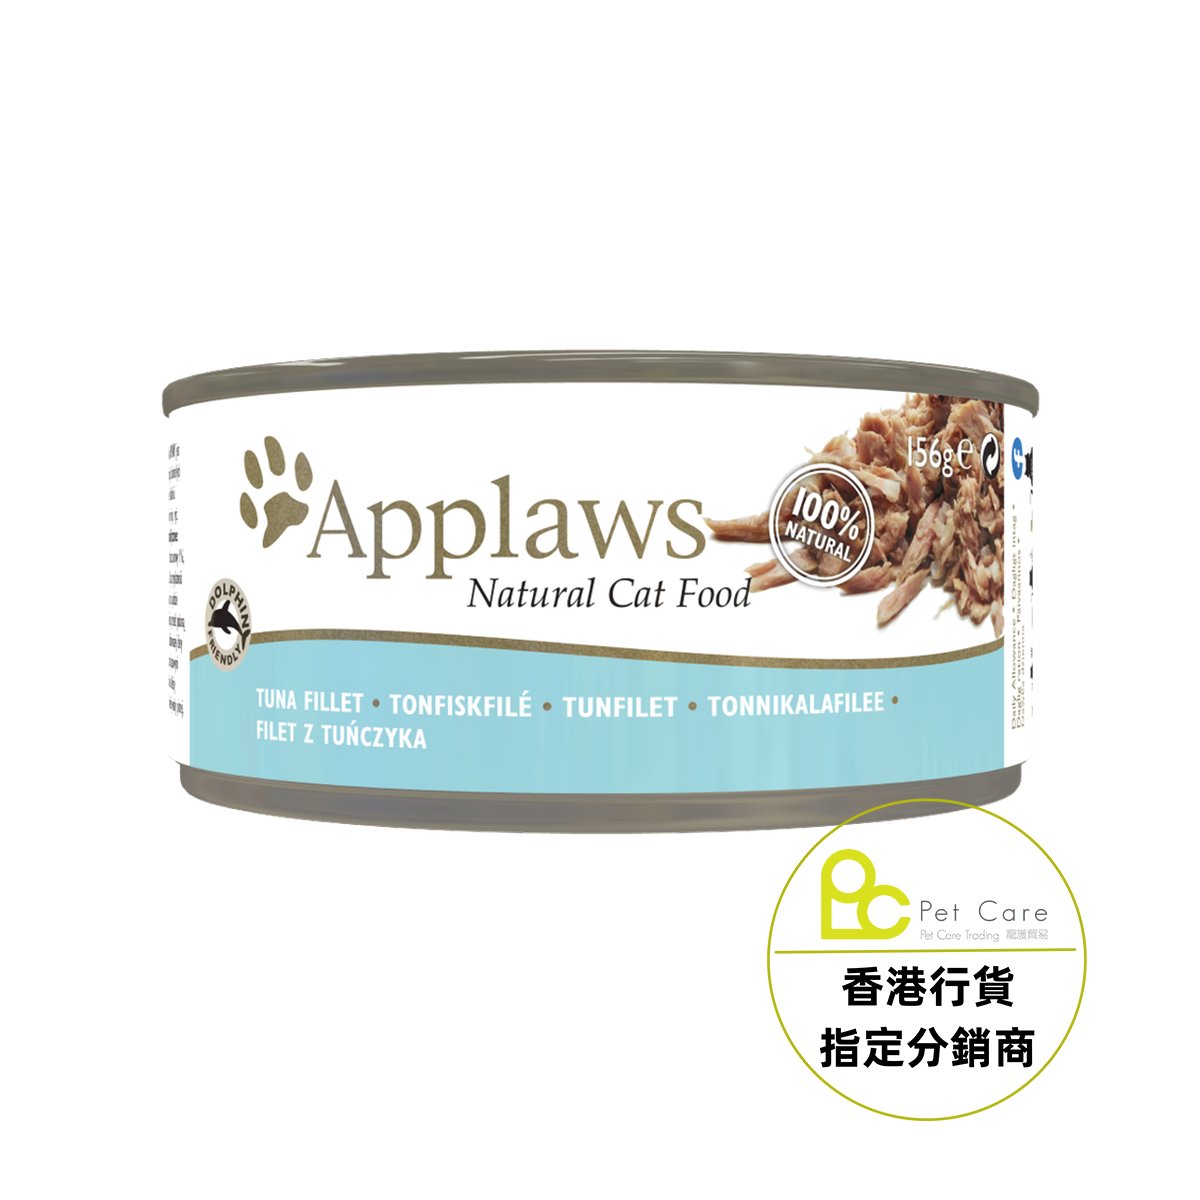 Applaws 全天然 156g 貓罐頭 - 吞拿魚 (大) - 幸福站